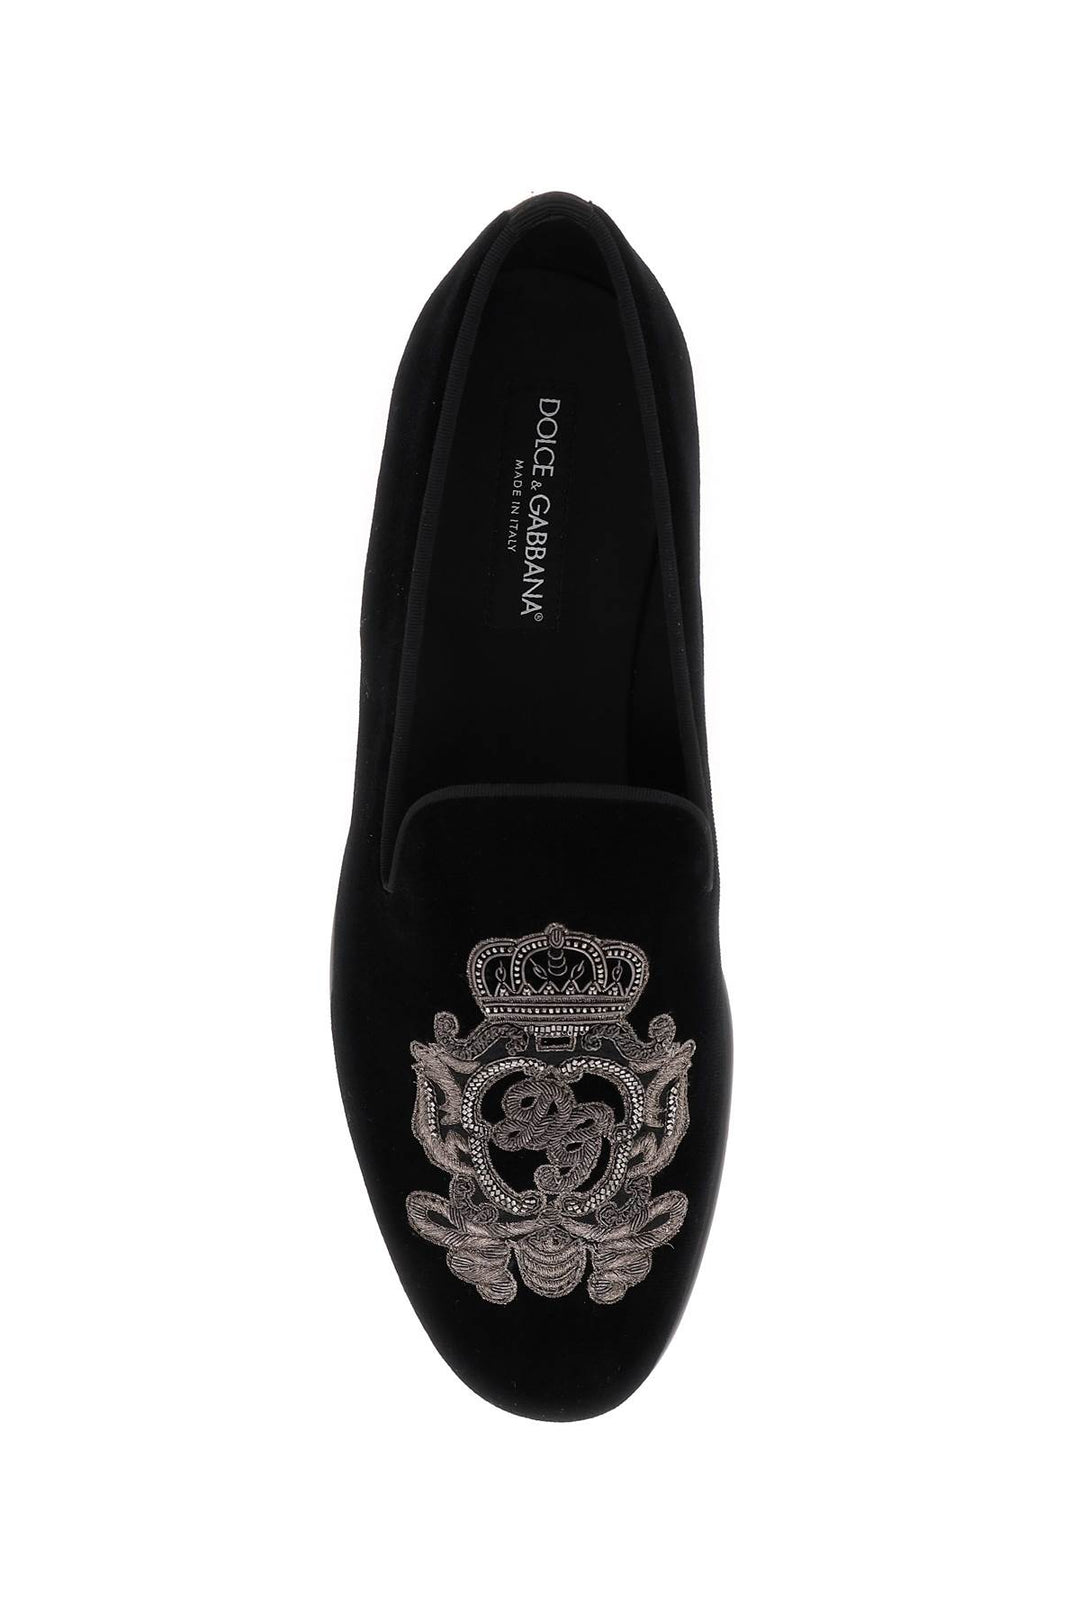 Dolce & Gabbana Velvet Loafers   Nero